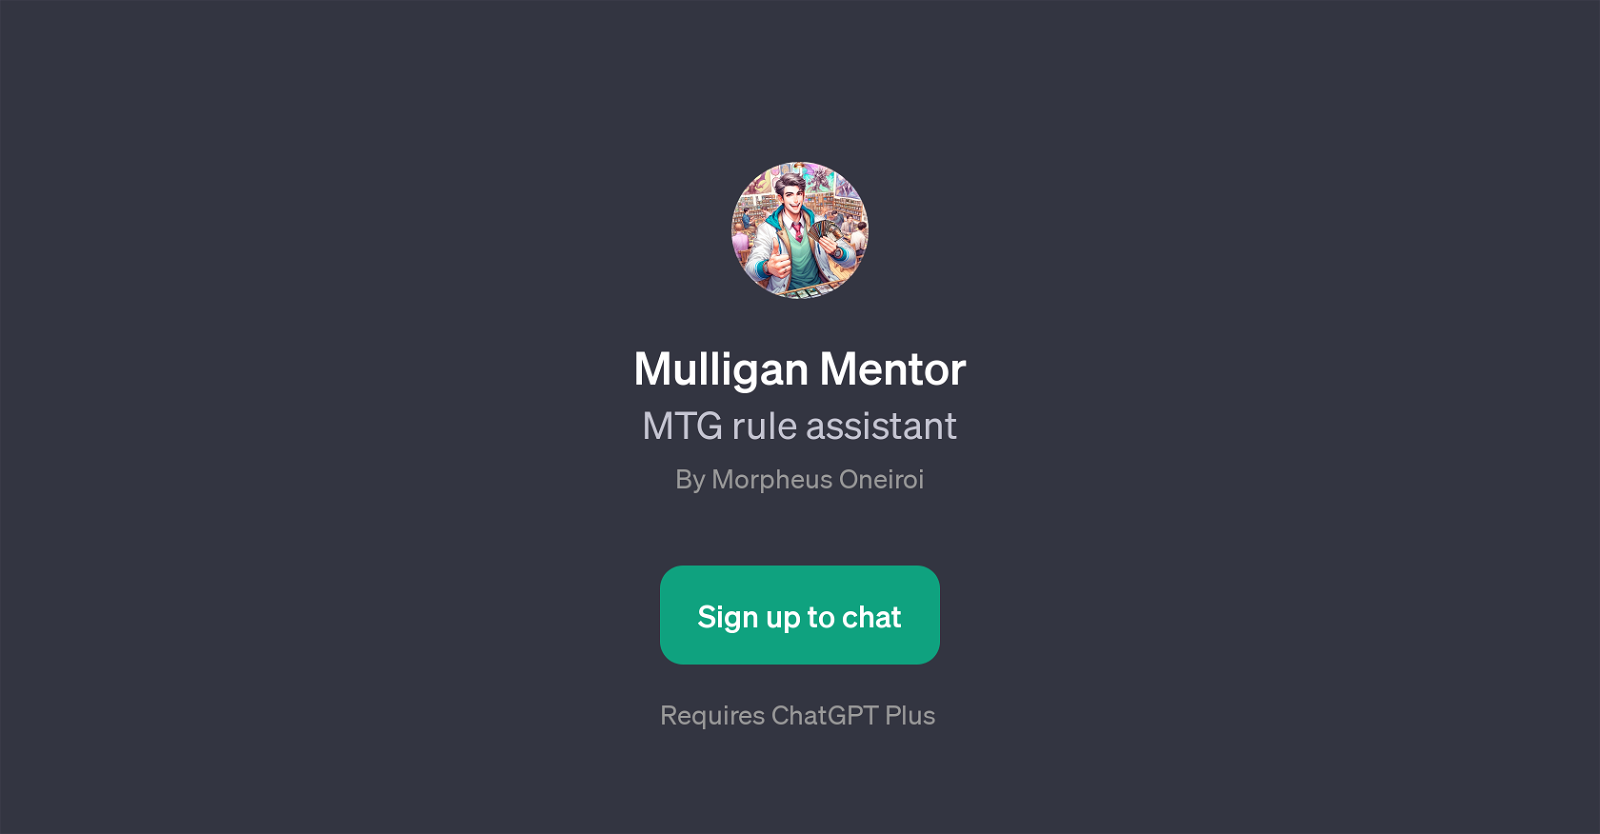 Mulligan Mentor website